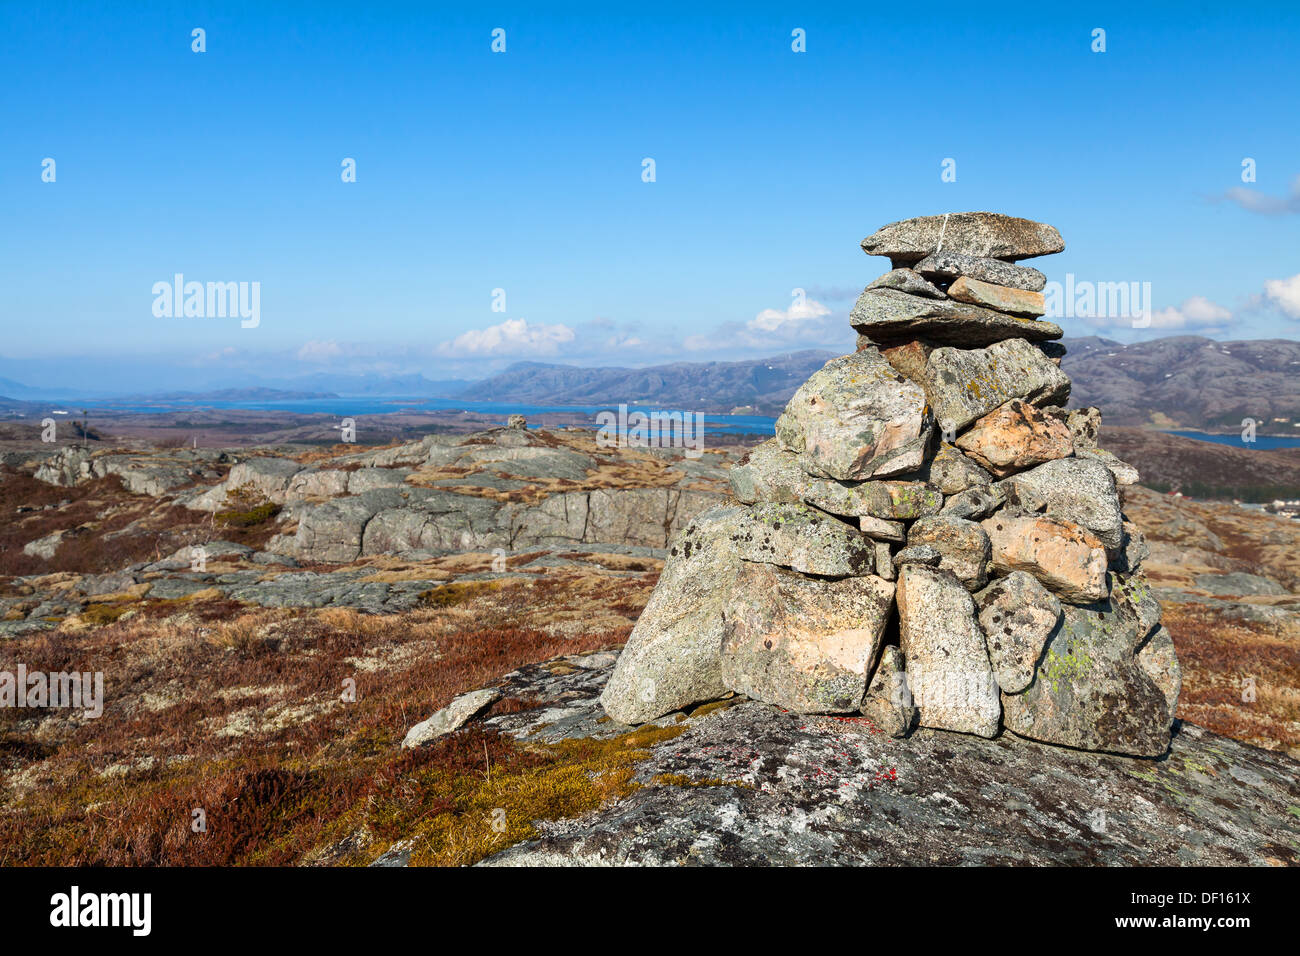 Cairn de pierre de granit comme un repère de navigation en haut de la montagne norvégienne Banque D'Images